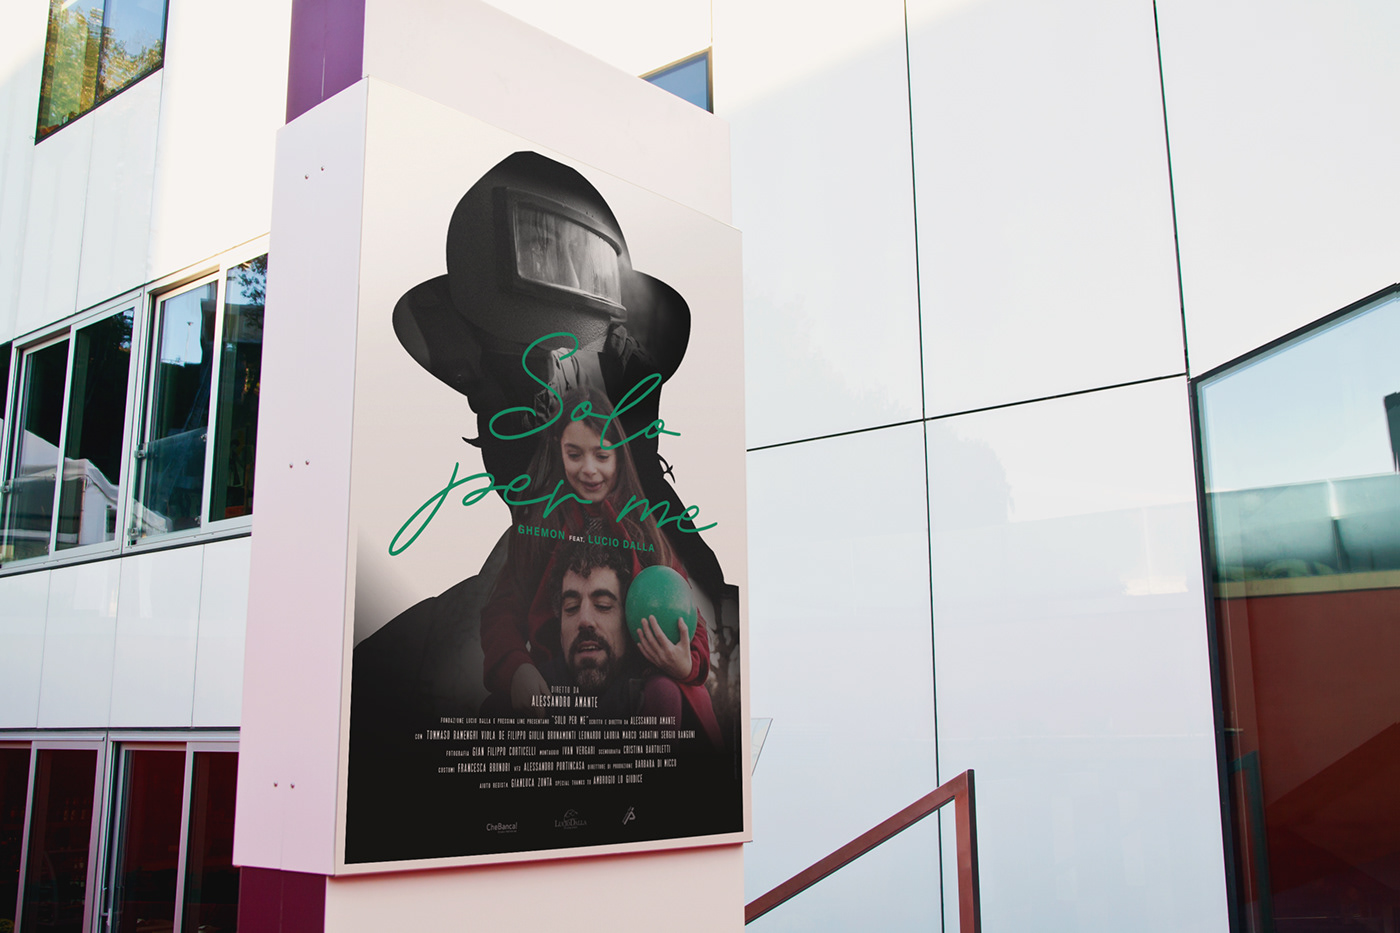 ghemon Lucio Dalla movie poster music music video poster Poster Design Roma Creative Contest